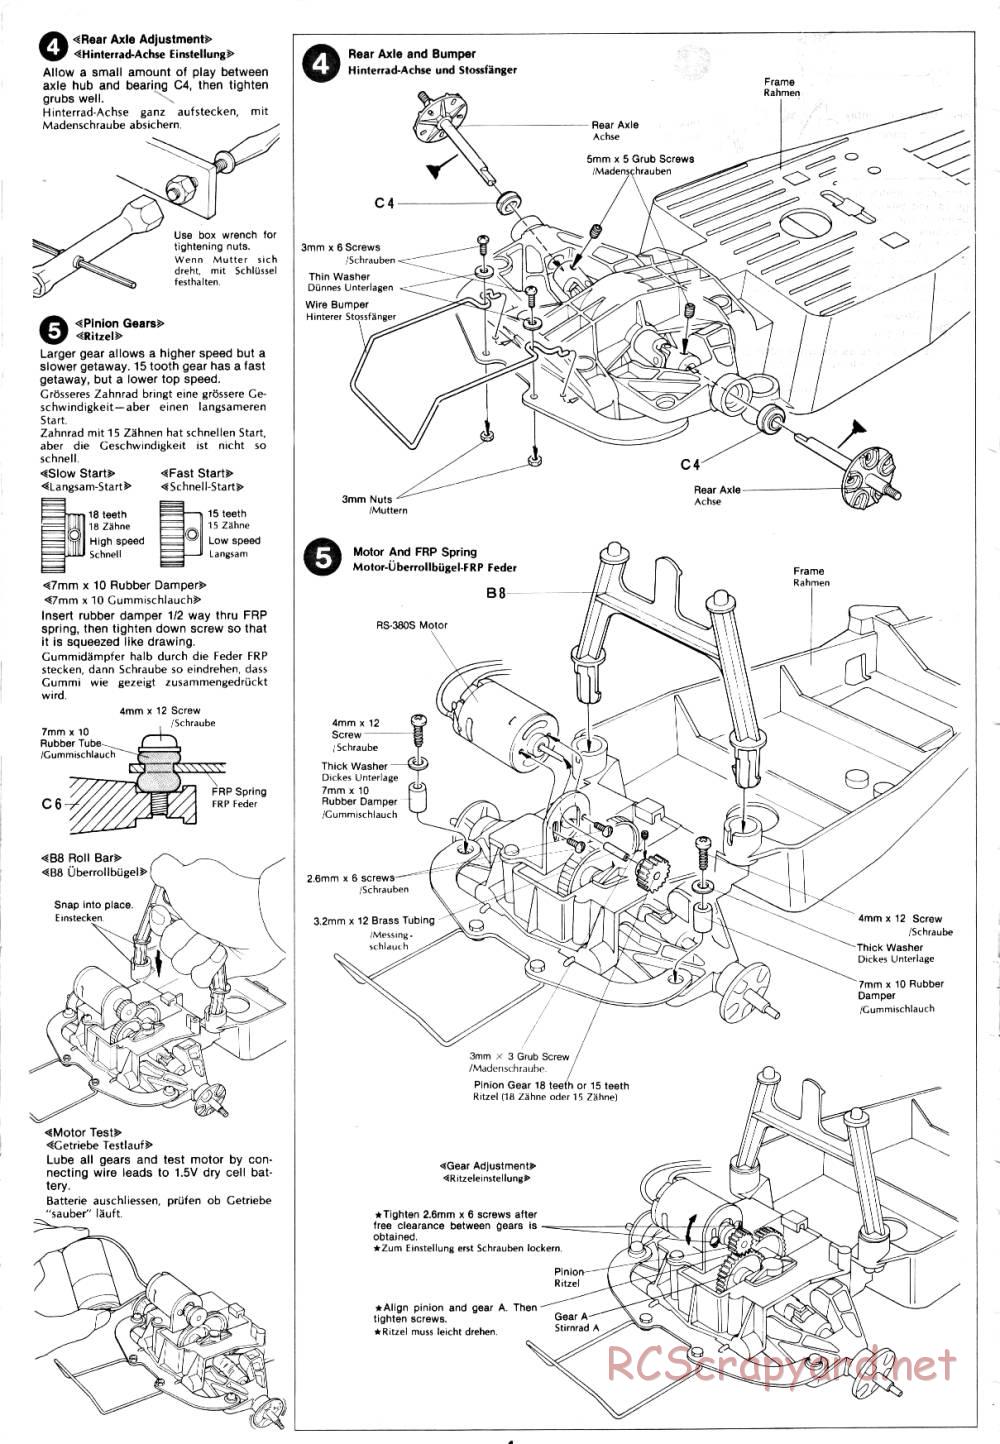 Tamiya - Holiday Buggy - 58023 - Manual - Page 4